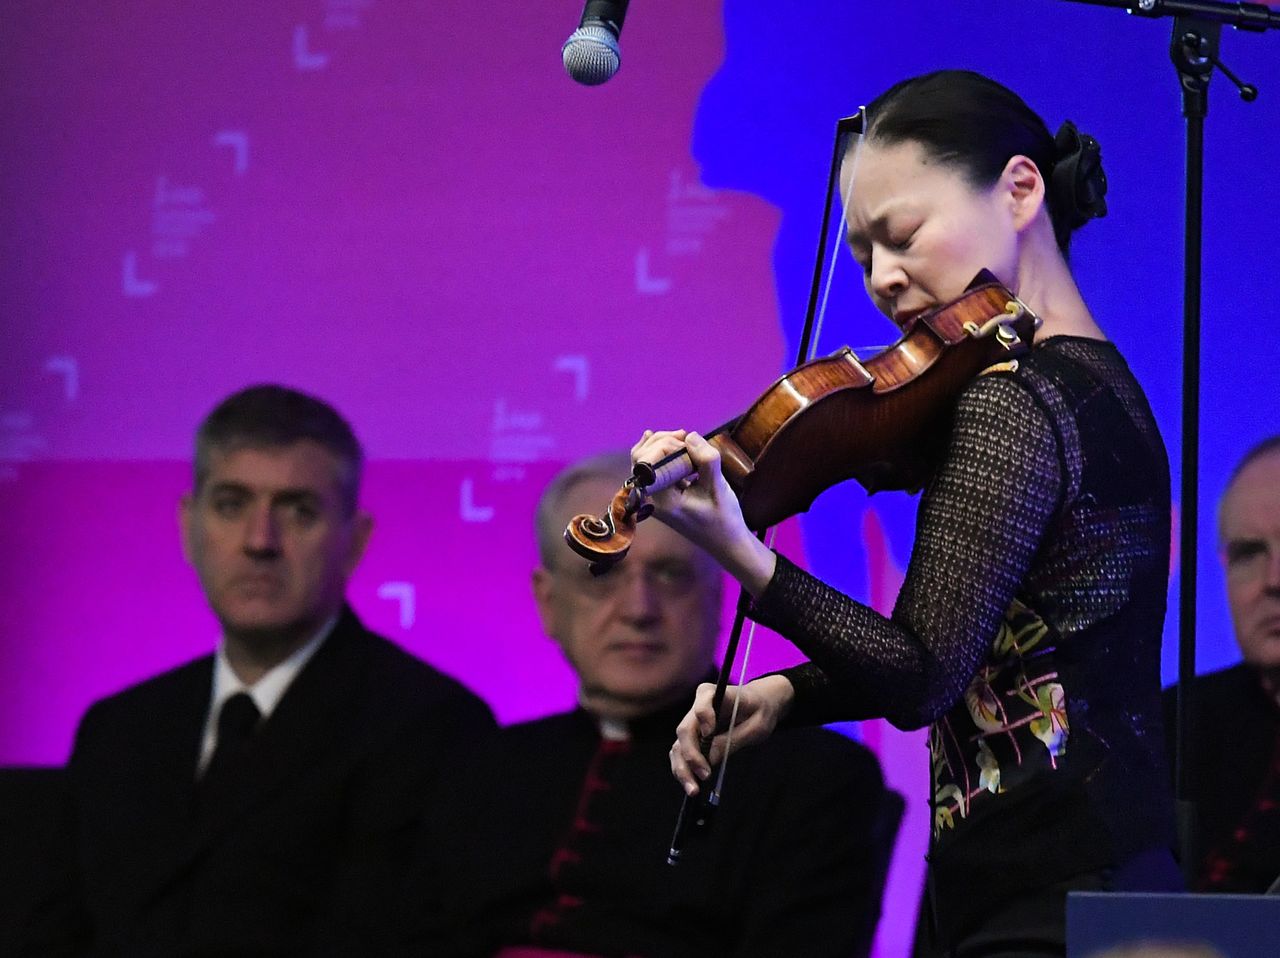 Скрипачка Гото Мидори выступает на заседании Международного фонда сельскохозяйственного развития в Риме, 14 февраля 2019 г. (AFP / Jiji Press)